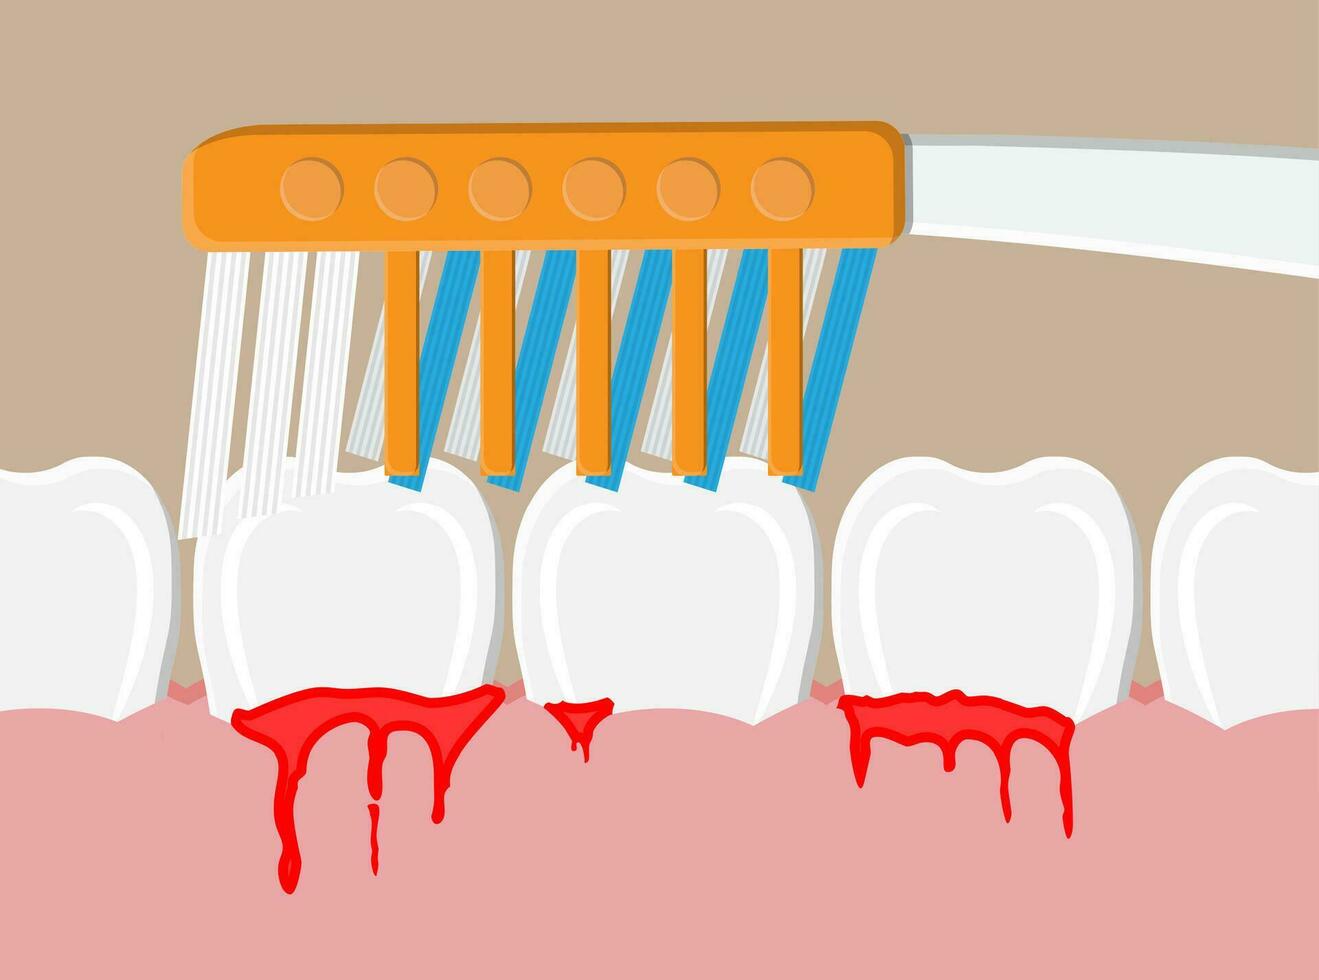 cepillo de dientes limpia dientes. periodontal enfermedad, sangrado cena. cepillado dientes. dental equipo. higiene y cuidado bucal. vector ilustración en plano estilo